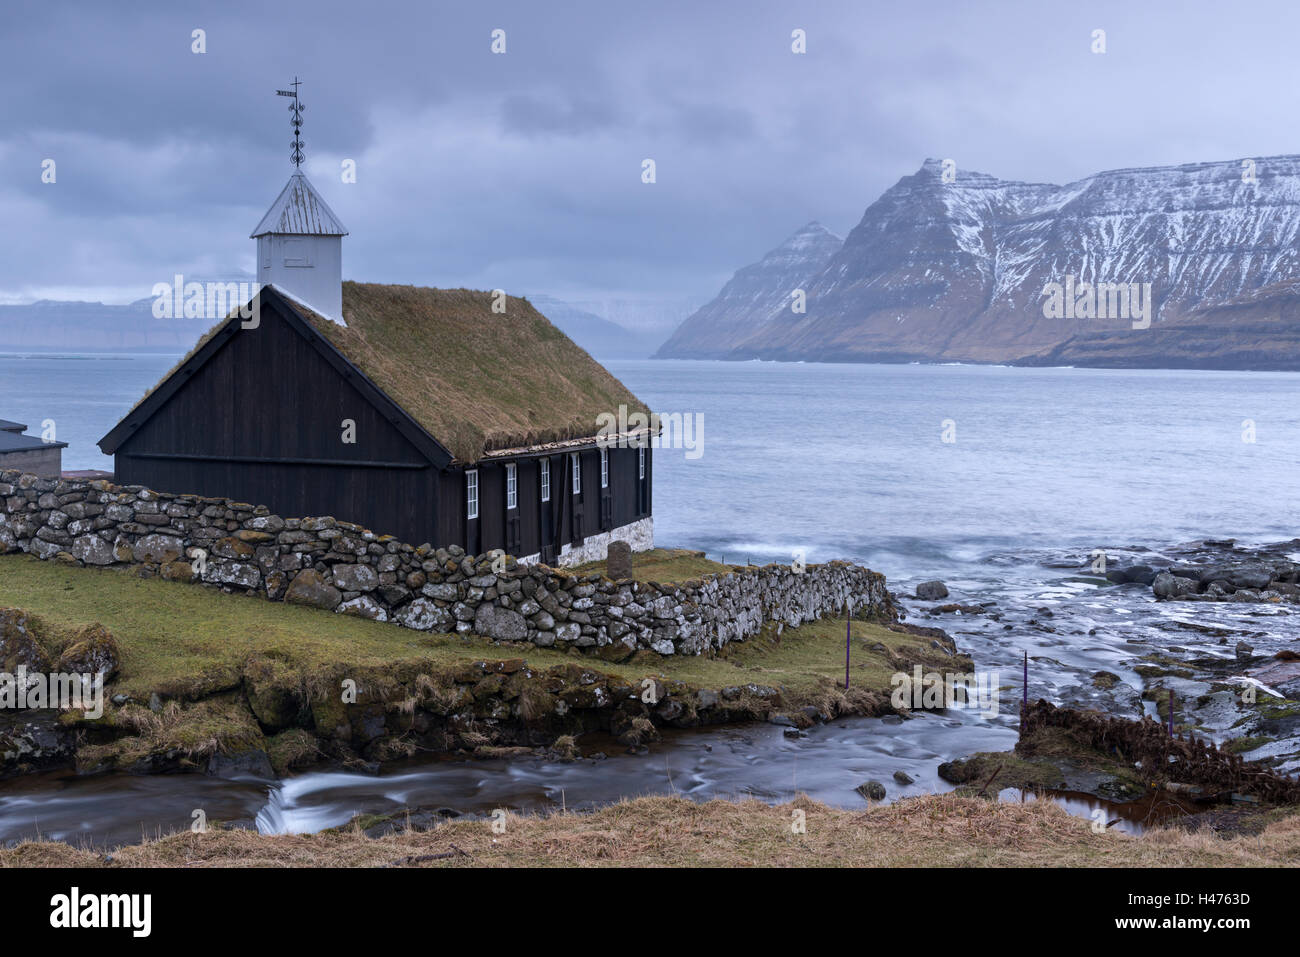 L'église au toit d'herbe dans le village de Funningur sur l'île de Eysturoy, îles Féroé, Danemark, Europe. L'hiver (avril) 2015. Banque D'Images